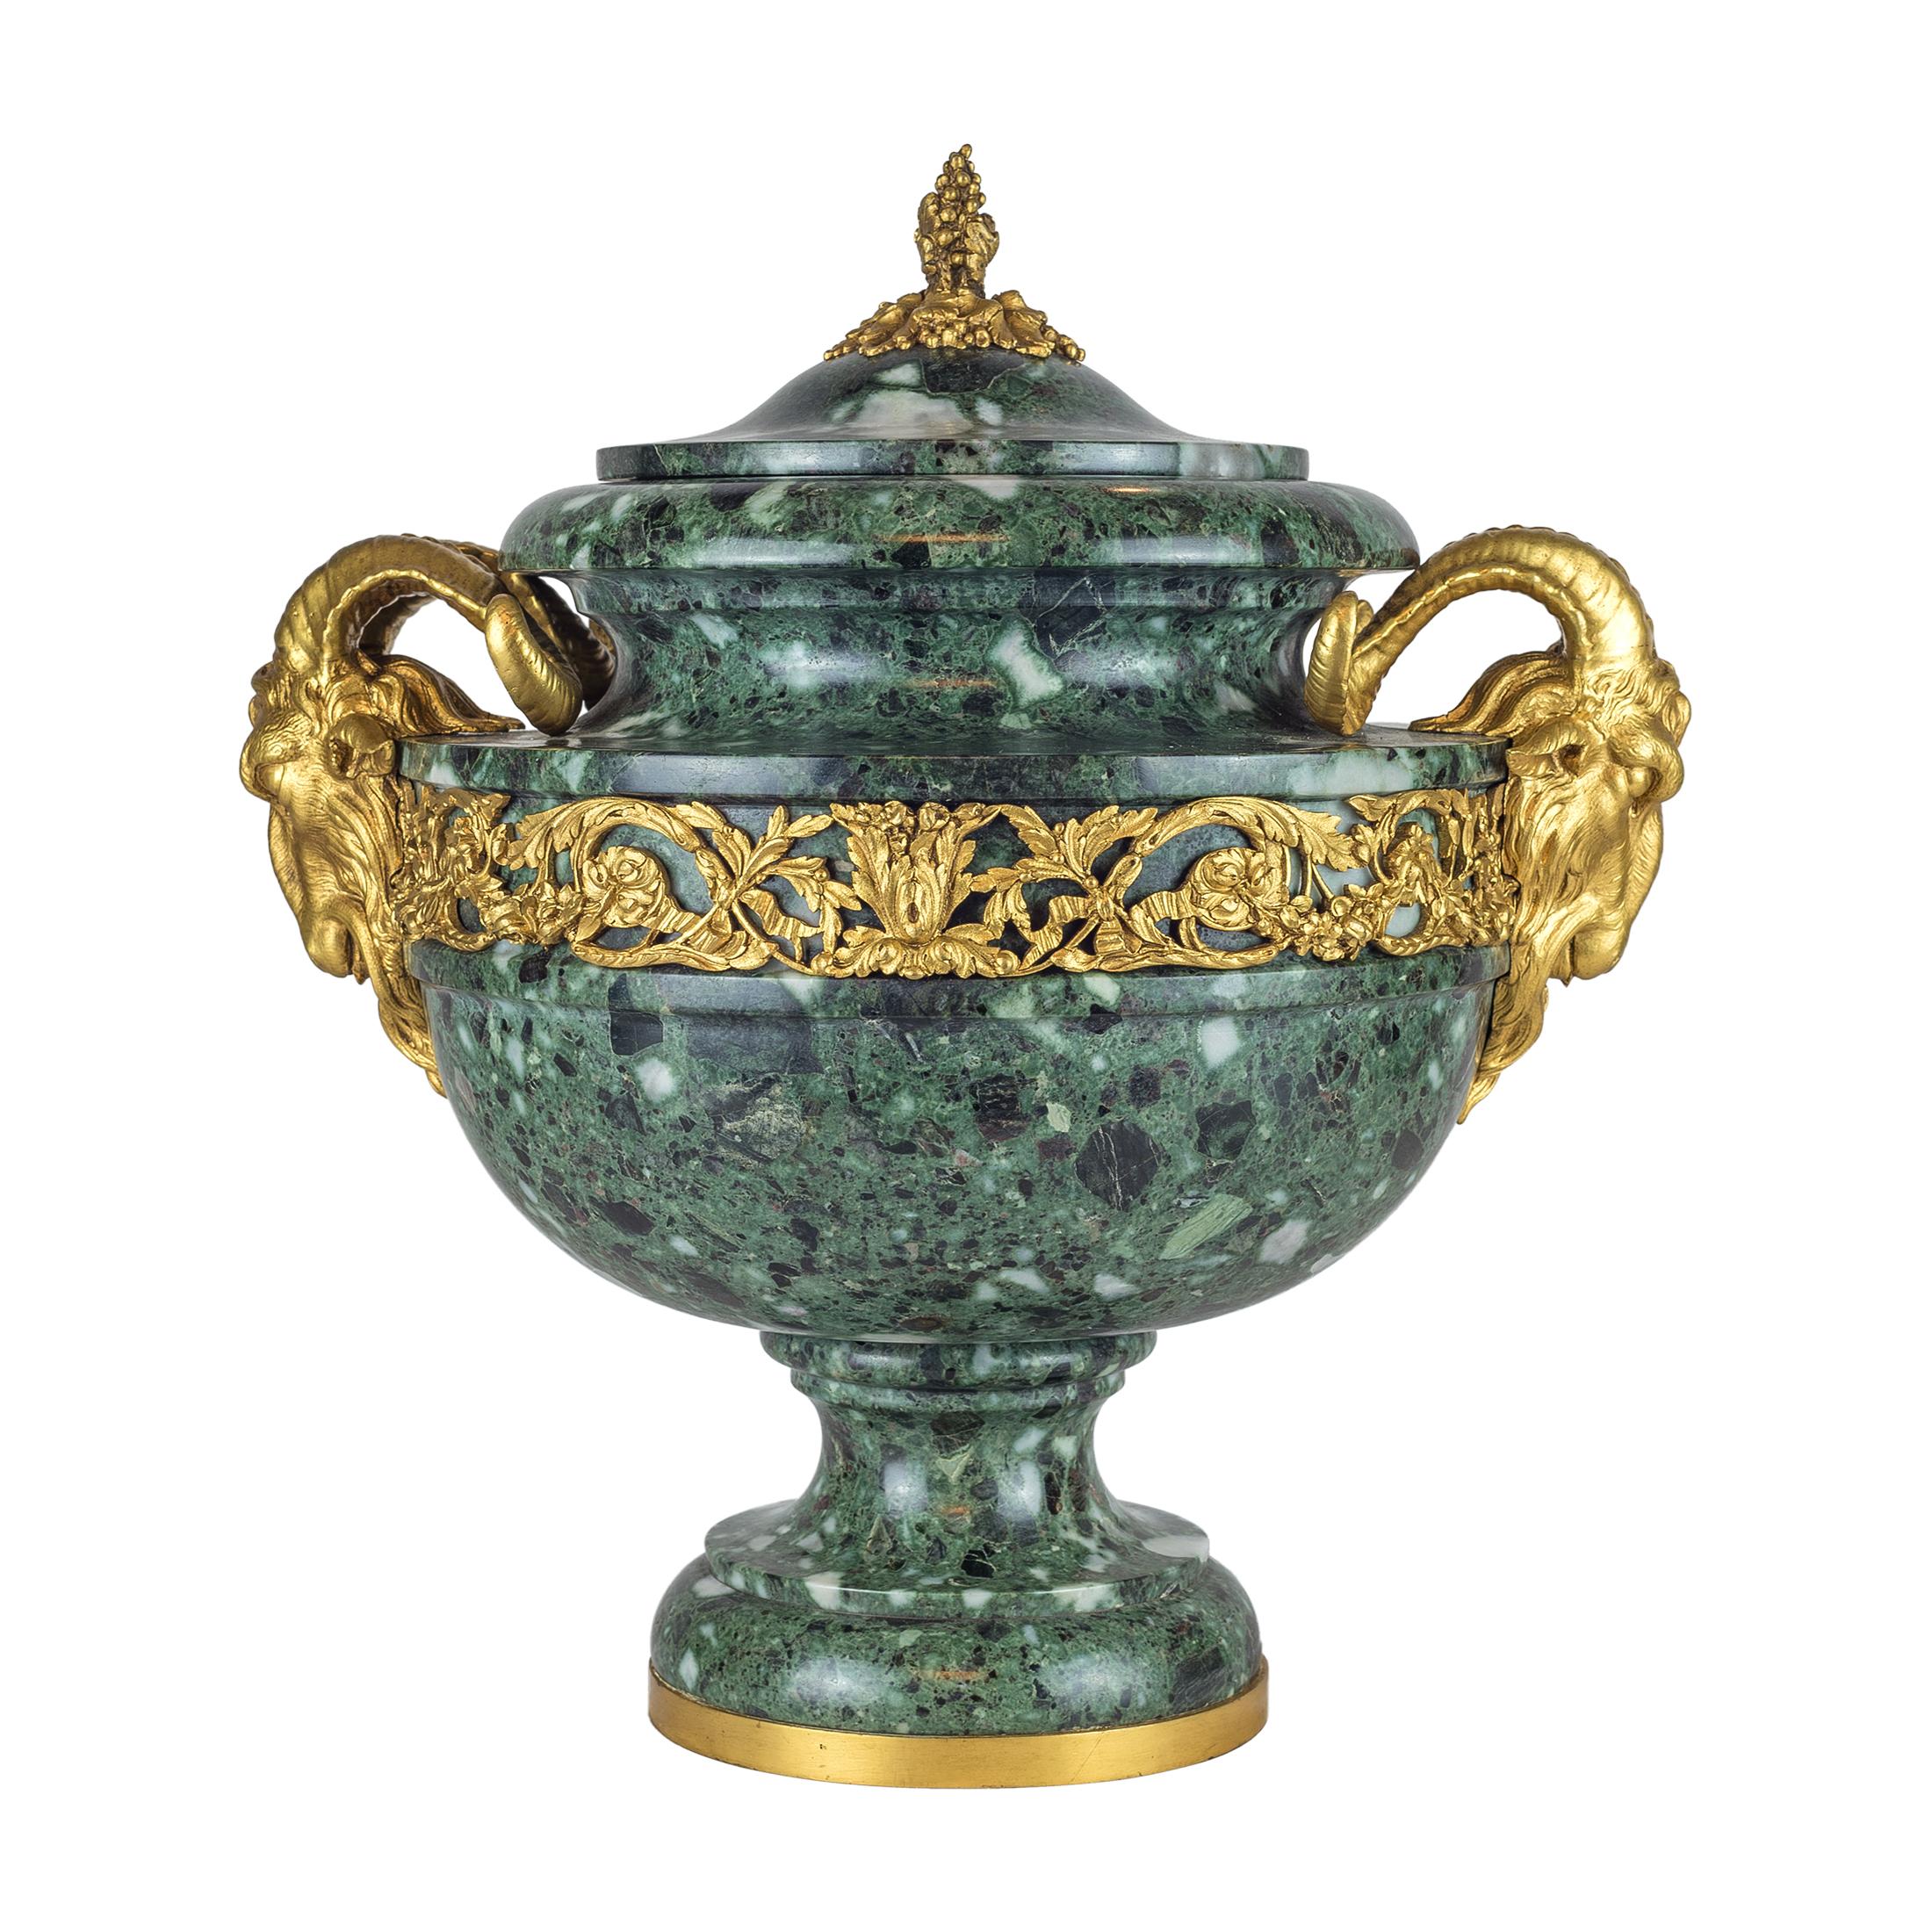 Une paire très spéciale d'Urnes en Marbre Verde Antico de style Louis XVI montées en Ormolu et couvercle.
Chacun d'entre eux est doté de fleurons en forme de raisin. Les poignées en forme de tête de bélier reposent sur une base circulaire en forme